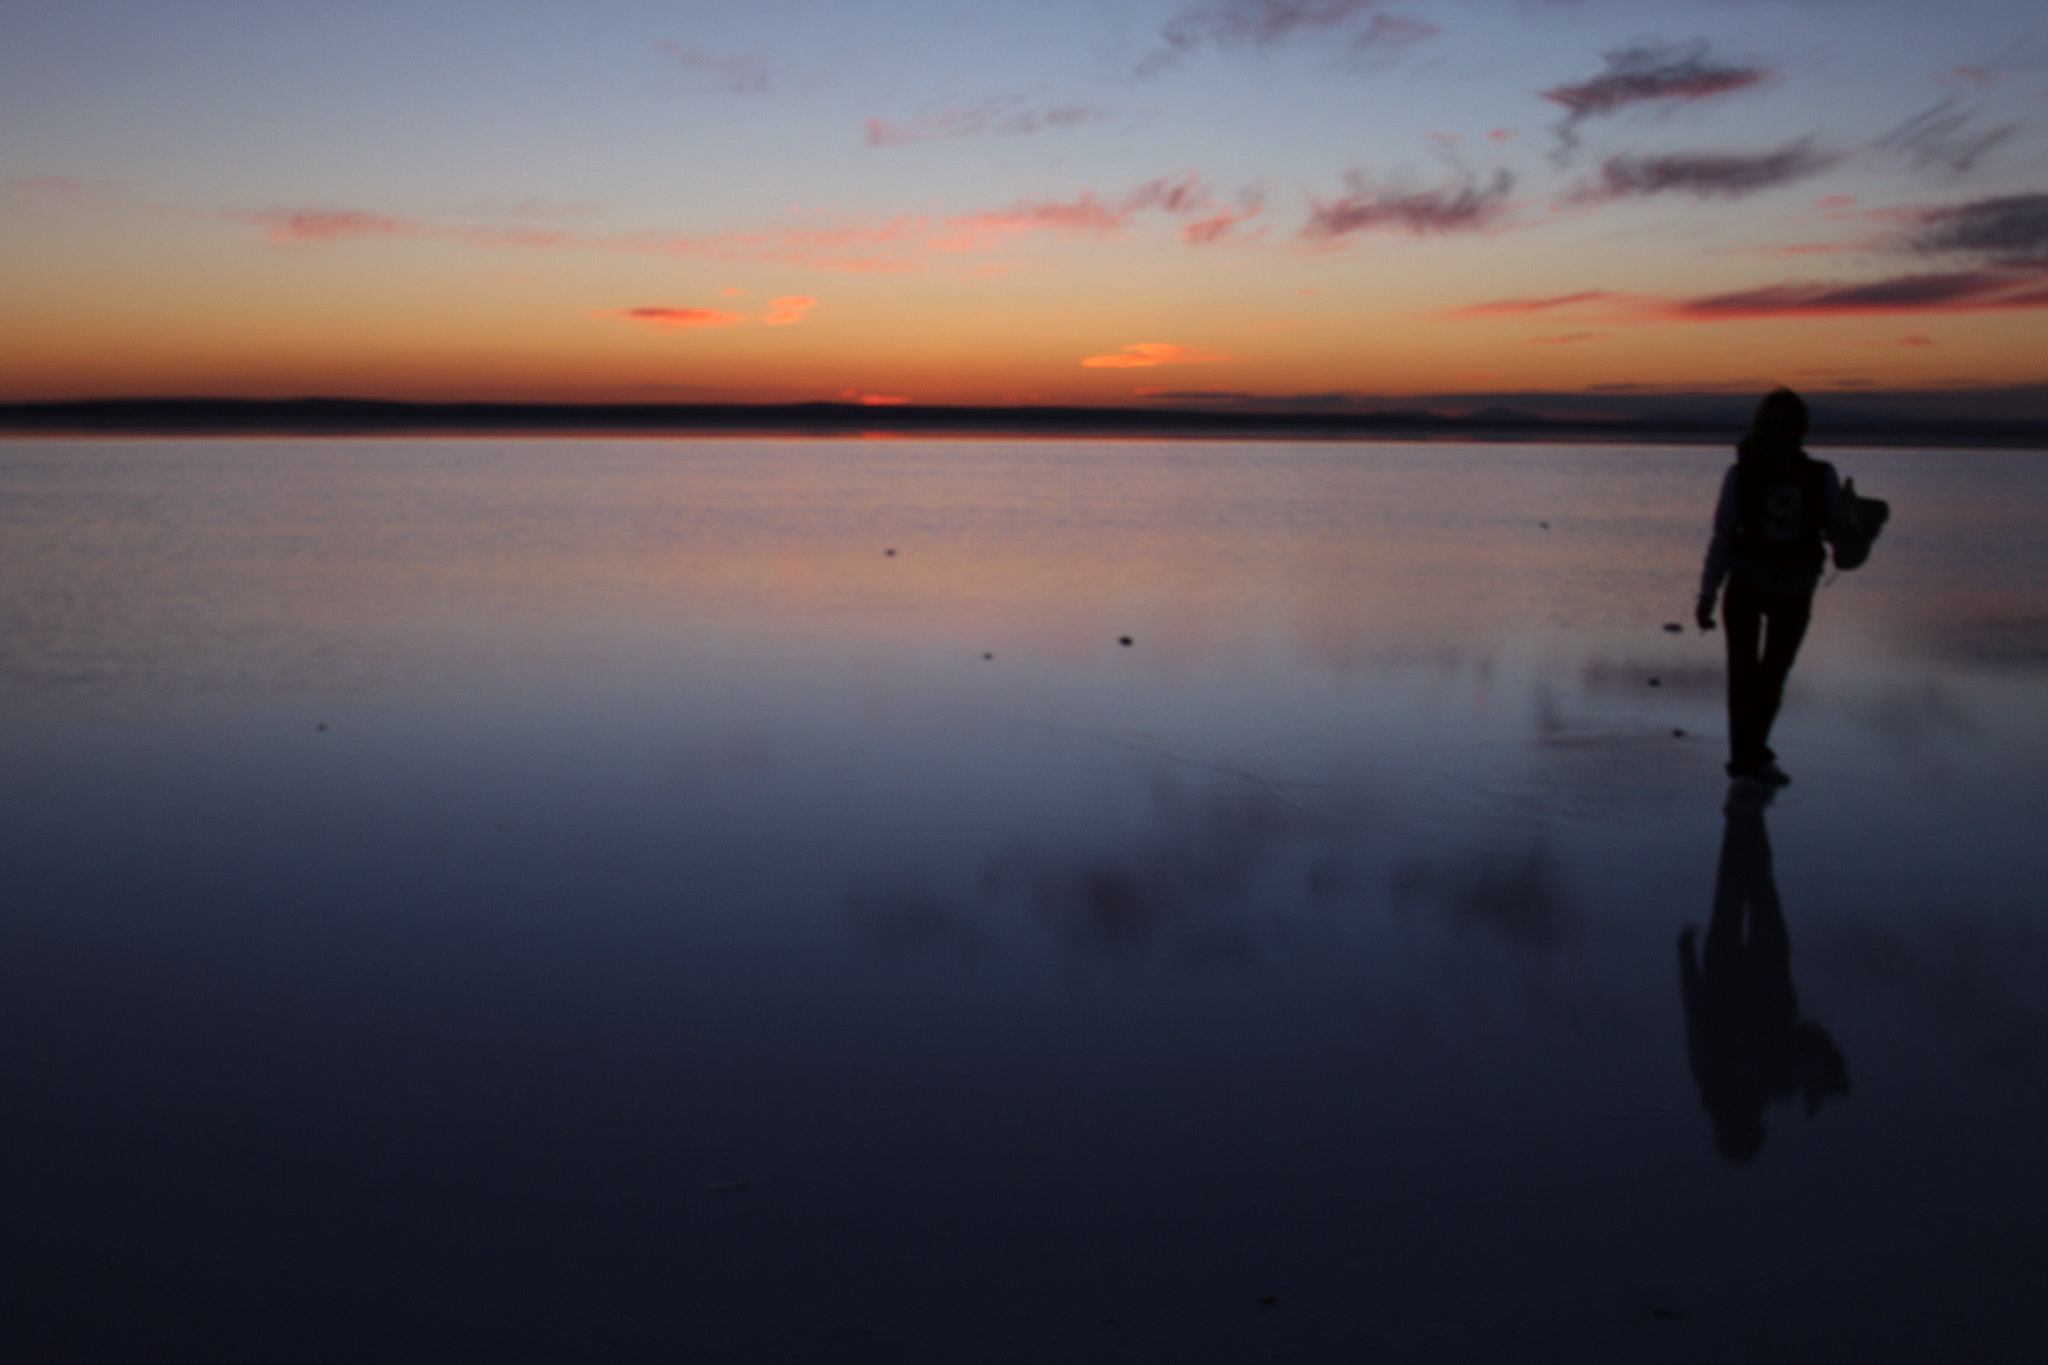 Canon EOS 70D sample photo. Tuz gölü 2016 photography